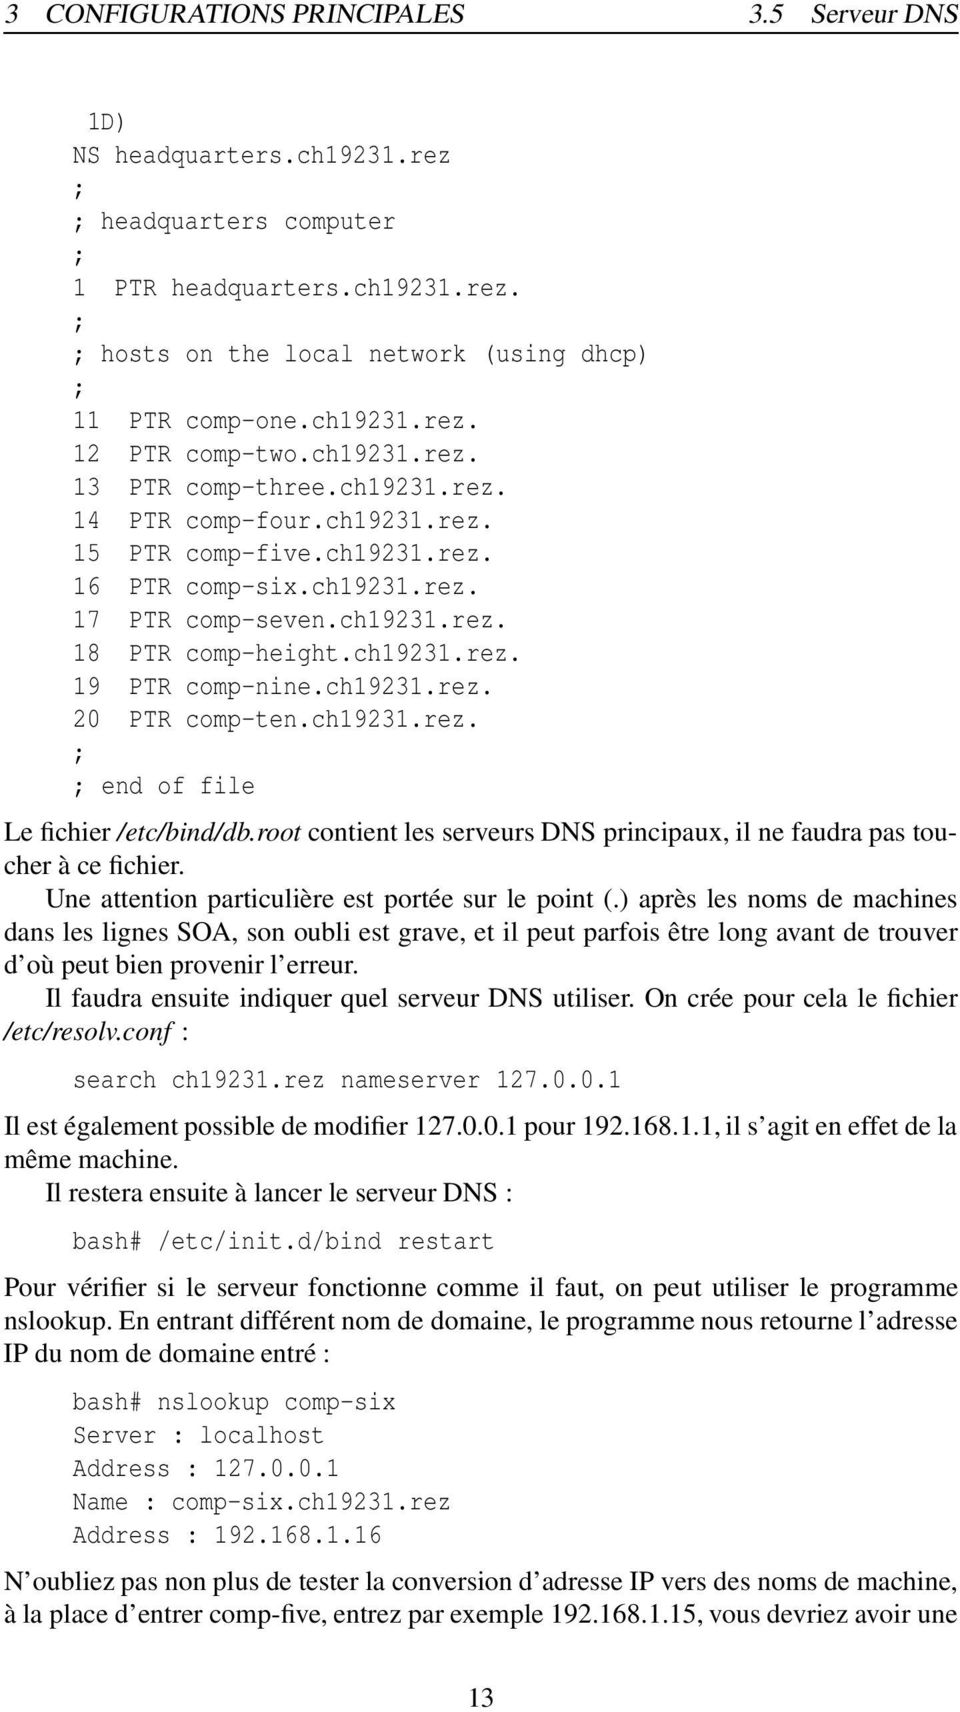 ch19231.rez. 20 PTR comp-ten.ch19231.rez. end of file Le fichier /etc/bind/db.root contient les serveurs DNS principaux, il ne faudra pas toucher à ce fichier.